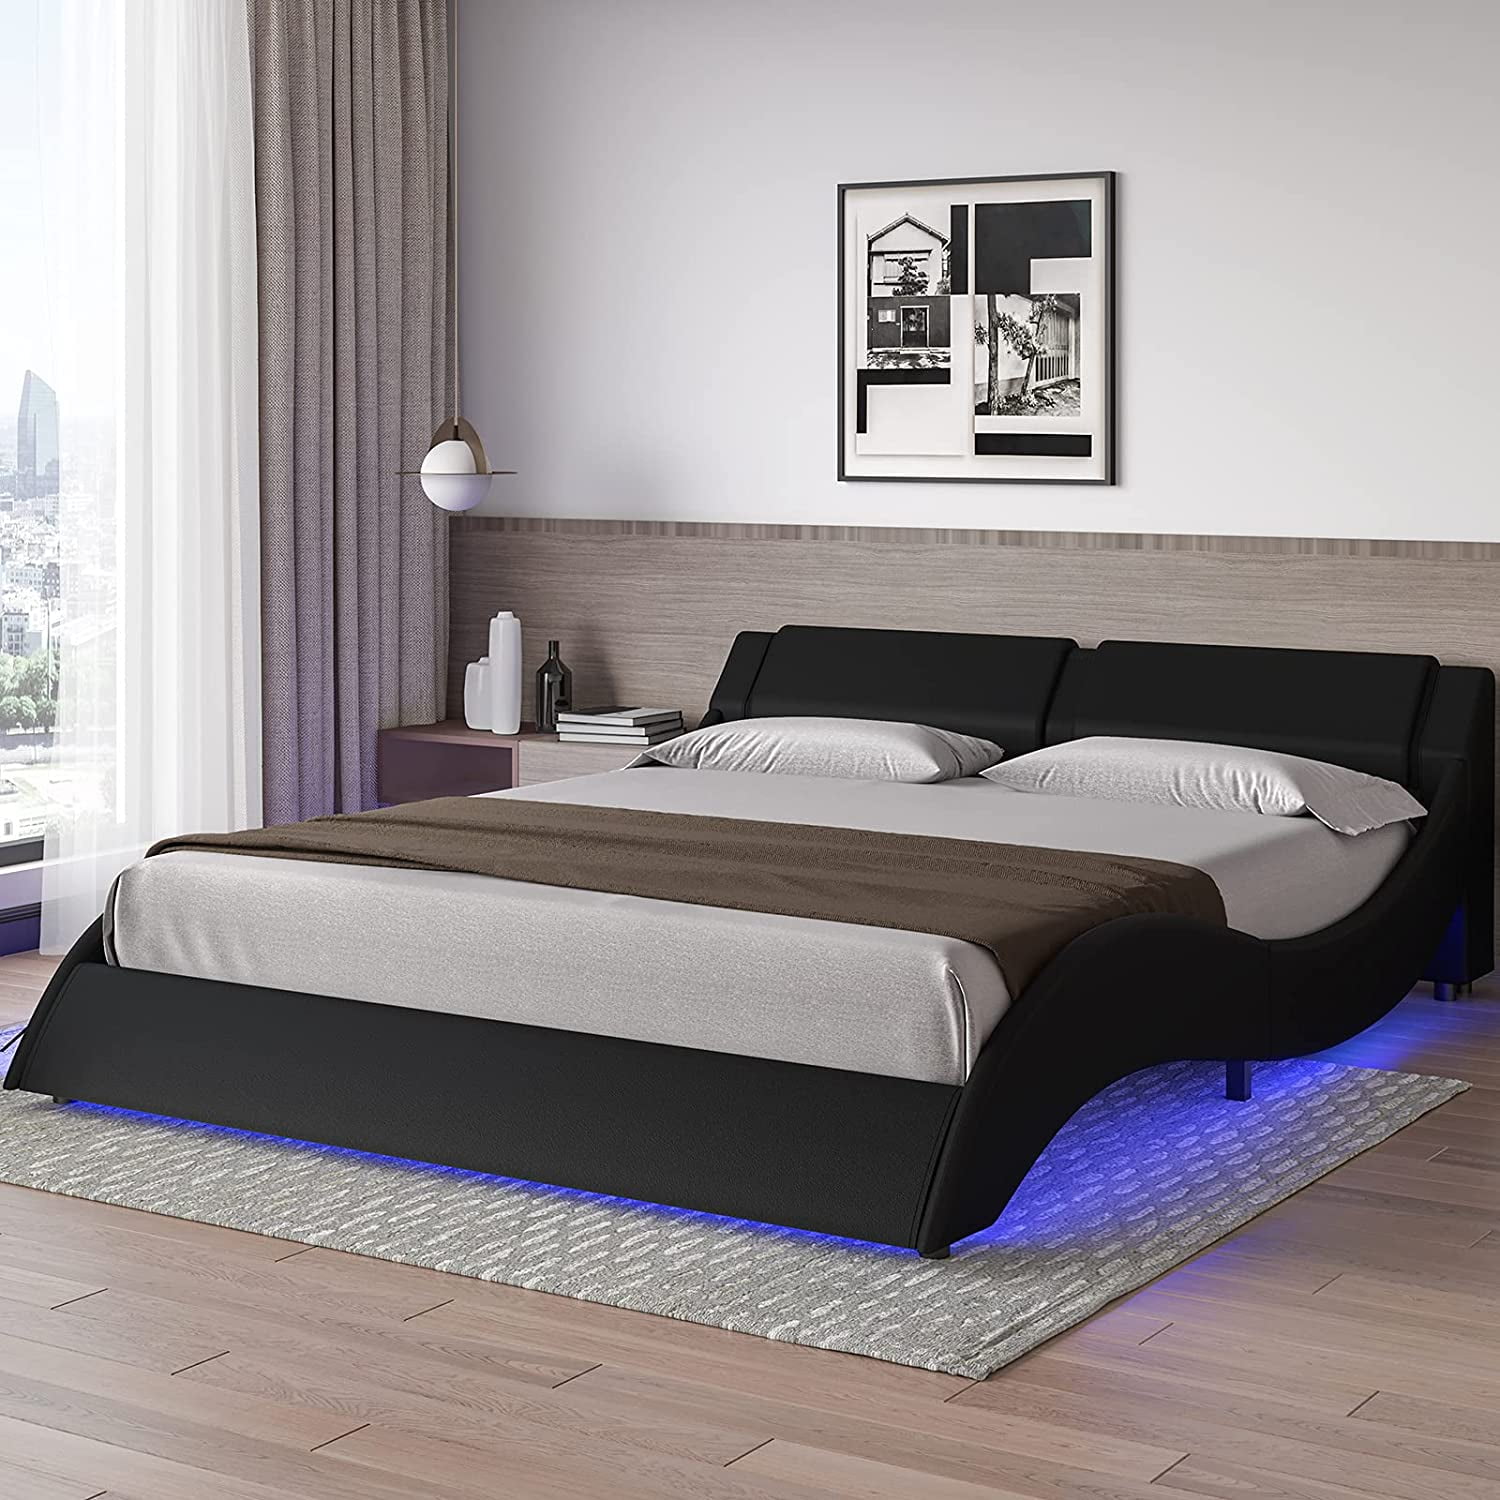 Dictac Full Led Bed Frame Wave Like, Do Bed Slats Go Curve Up Or Down